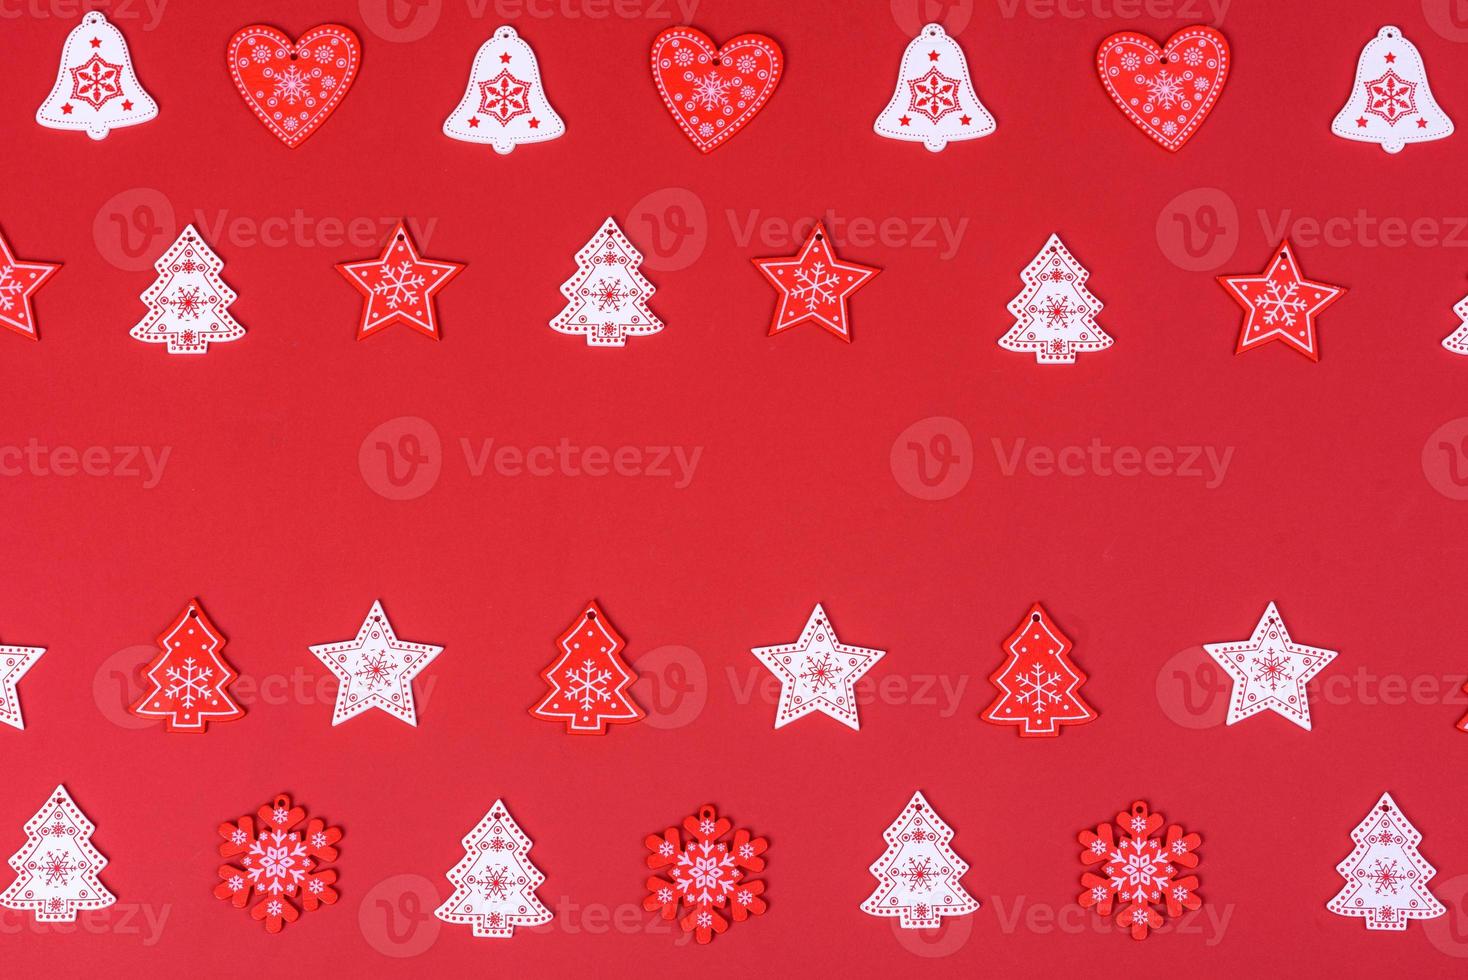 elementos rojos y blancos que se utilizan para decorar el árbol de navidad foto